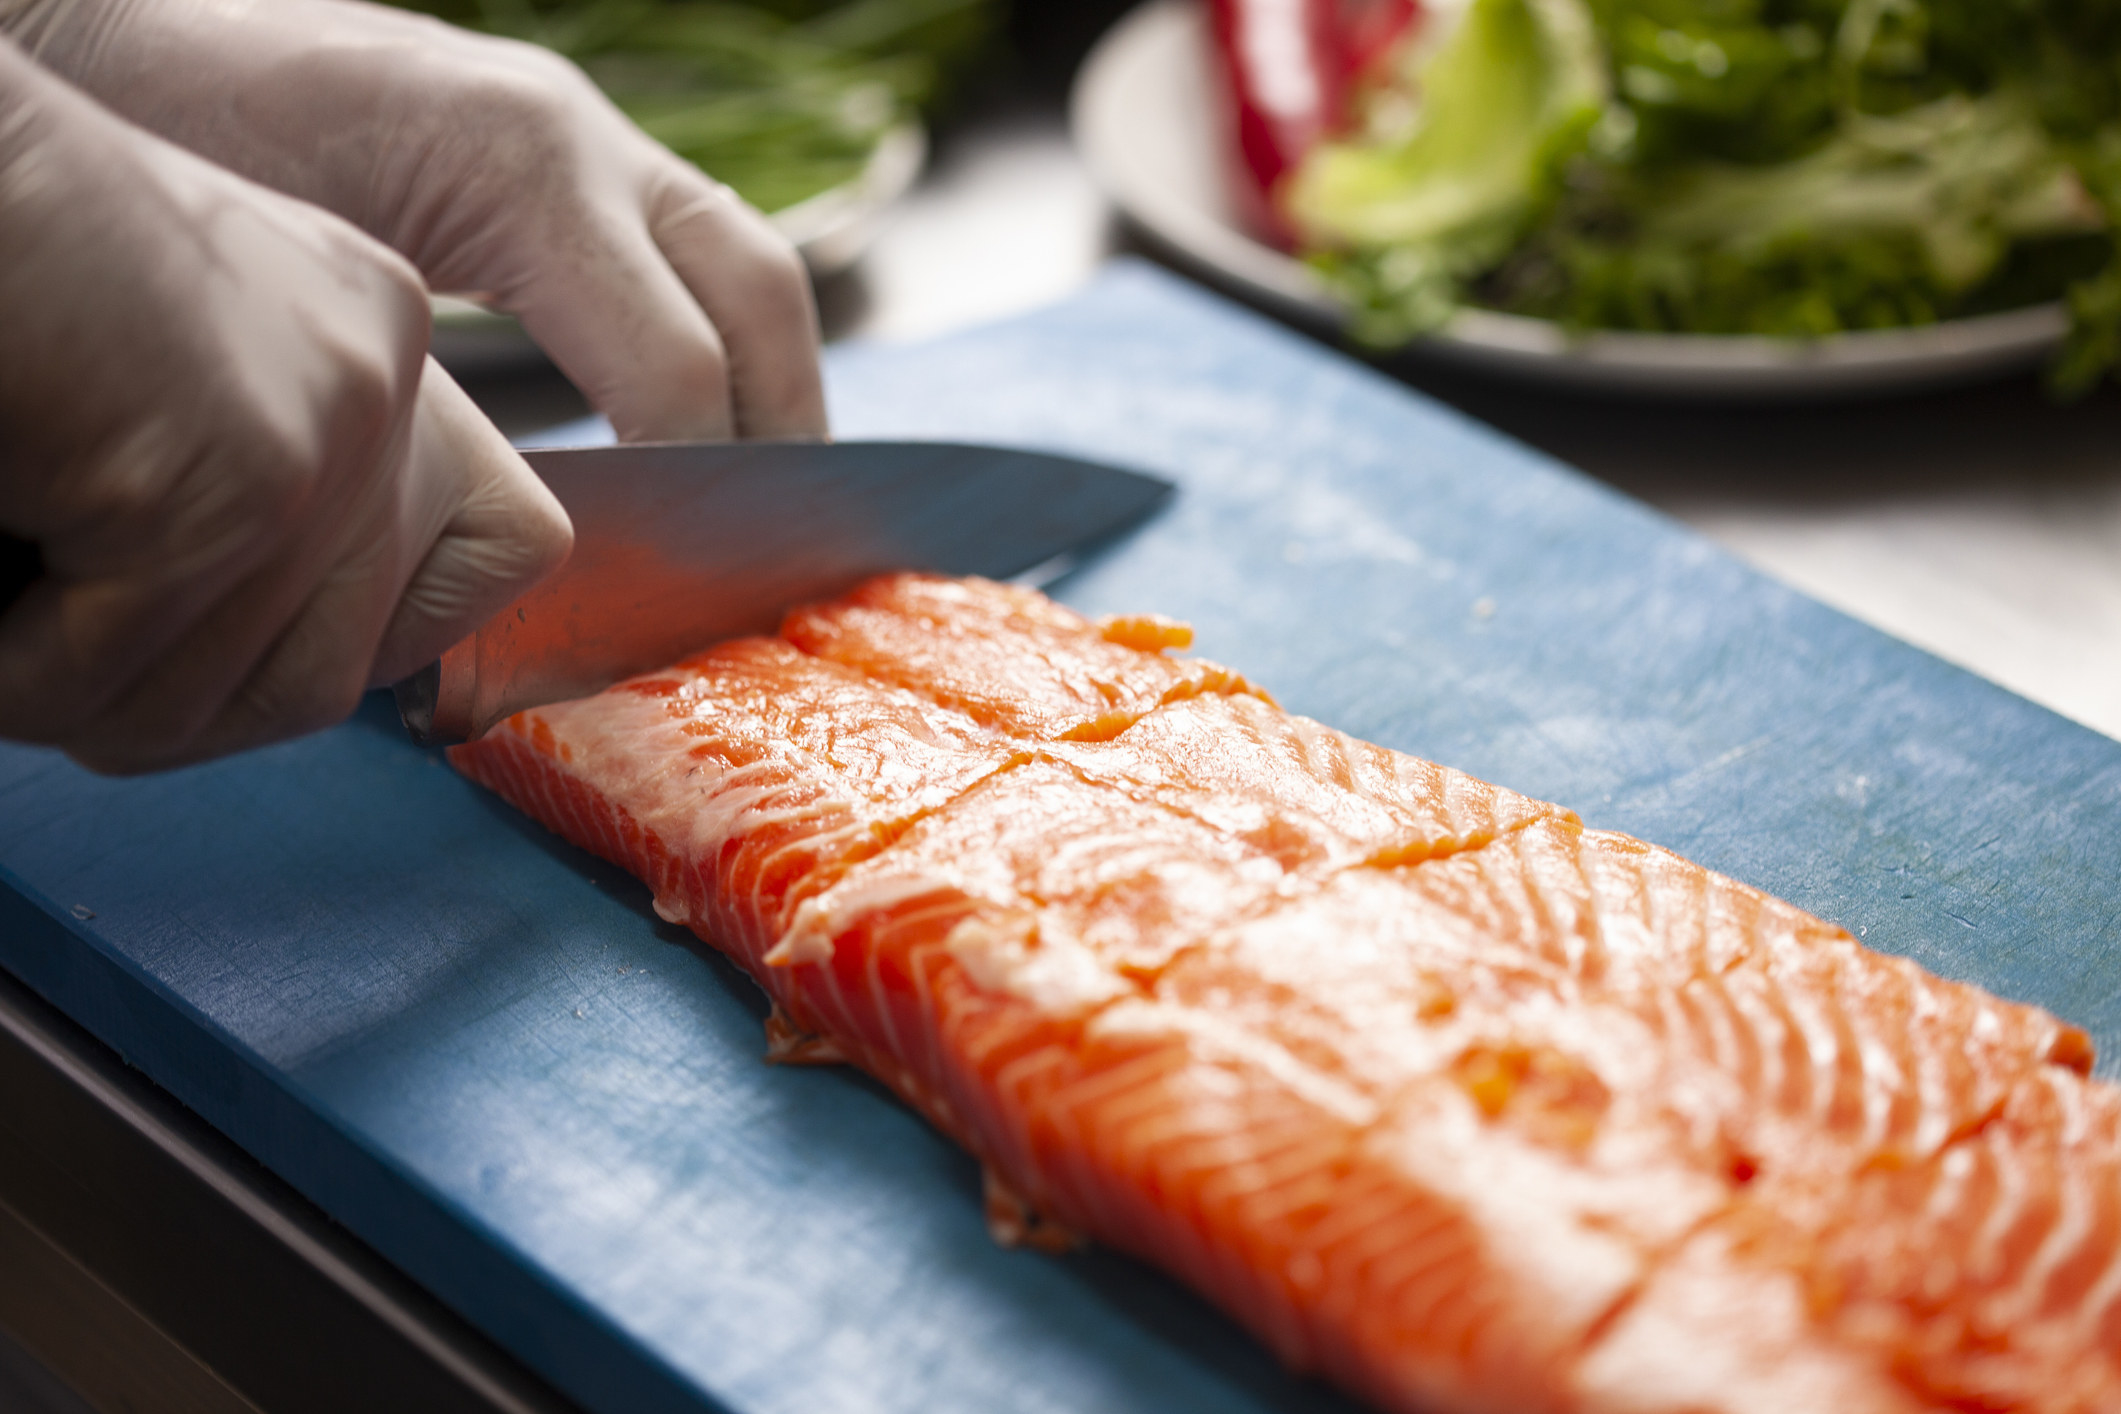 A person preparing salmon